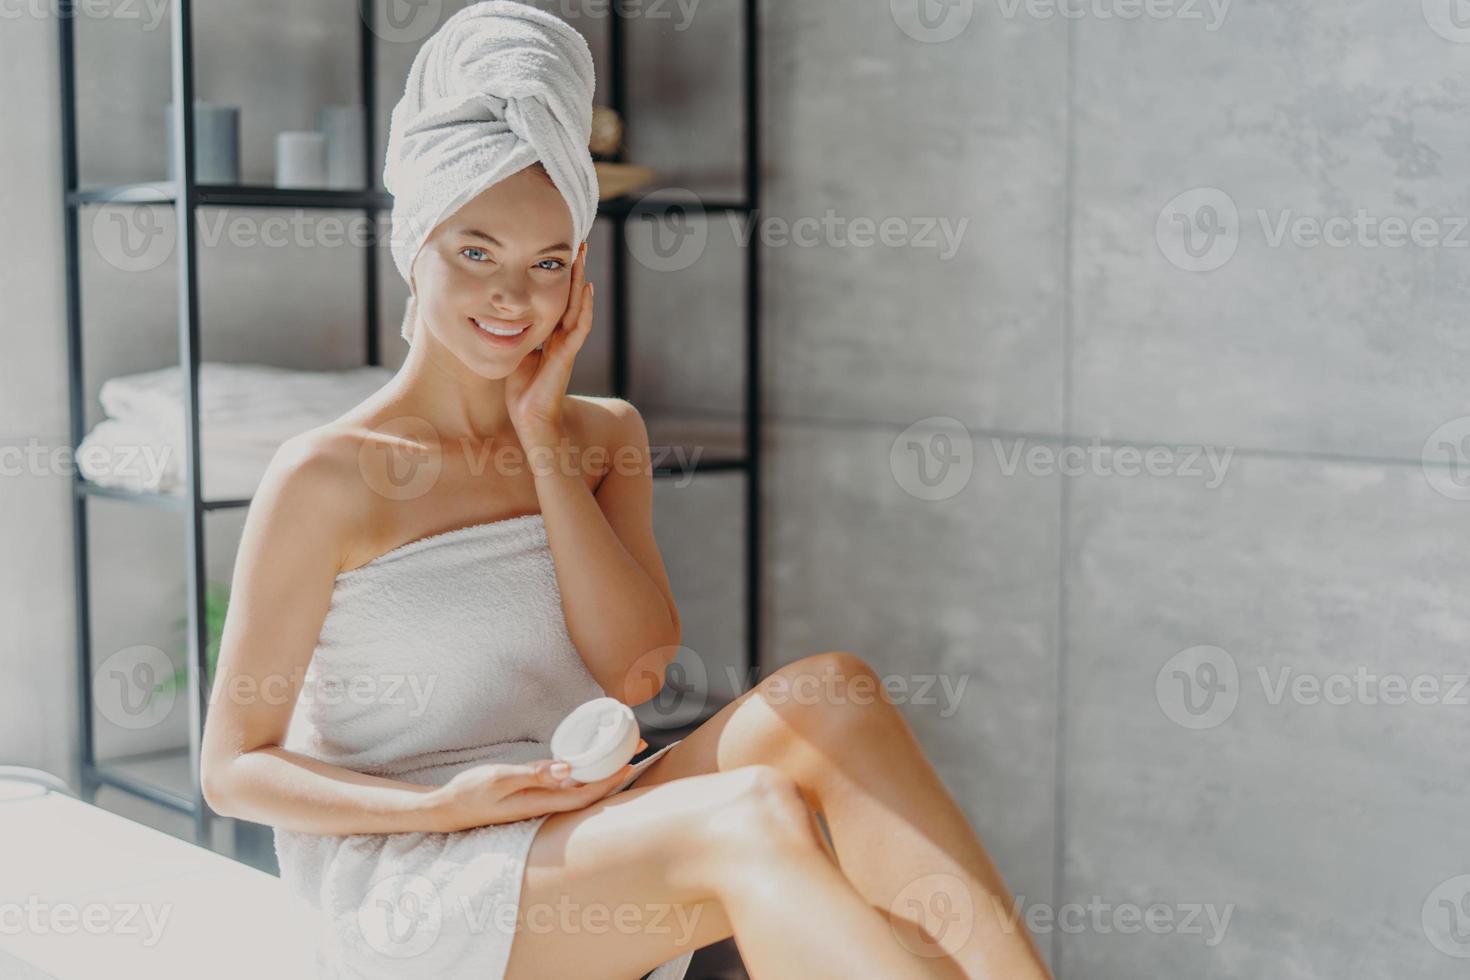 photo d'une jeune femme européenne souriante touche la joue, applique une crème hydratante sur le visage, a une expression heureuse, enveloppée dans une serviette de bain douce, pose dans la salle de bain. concept de routine d'hygiène beauté